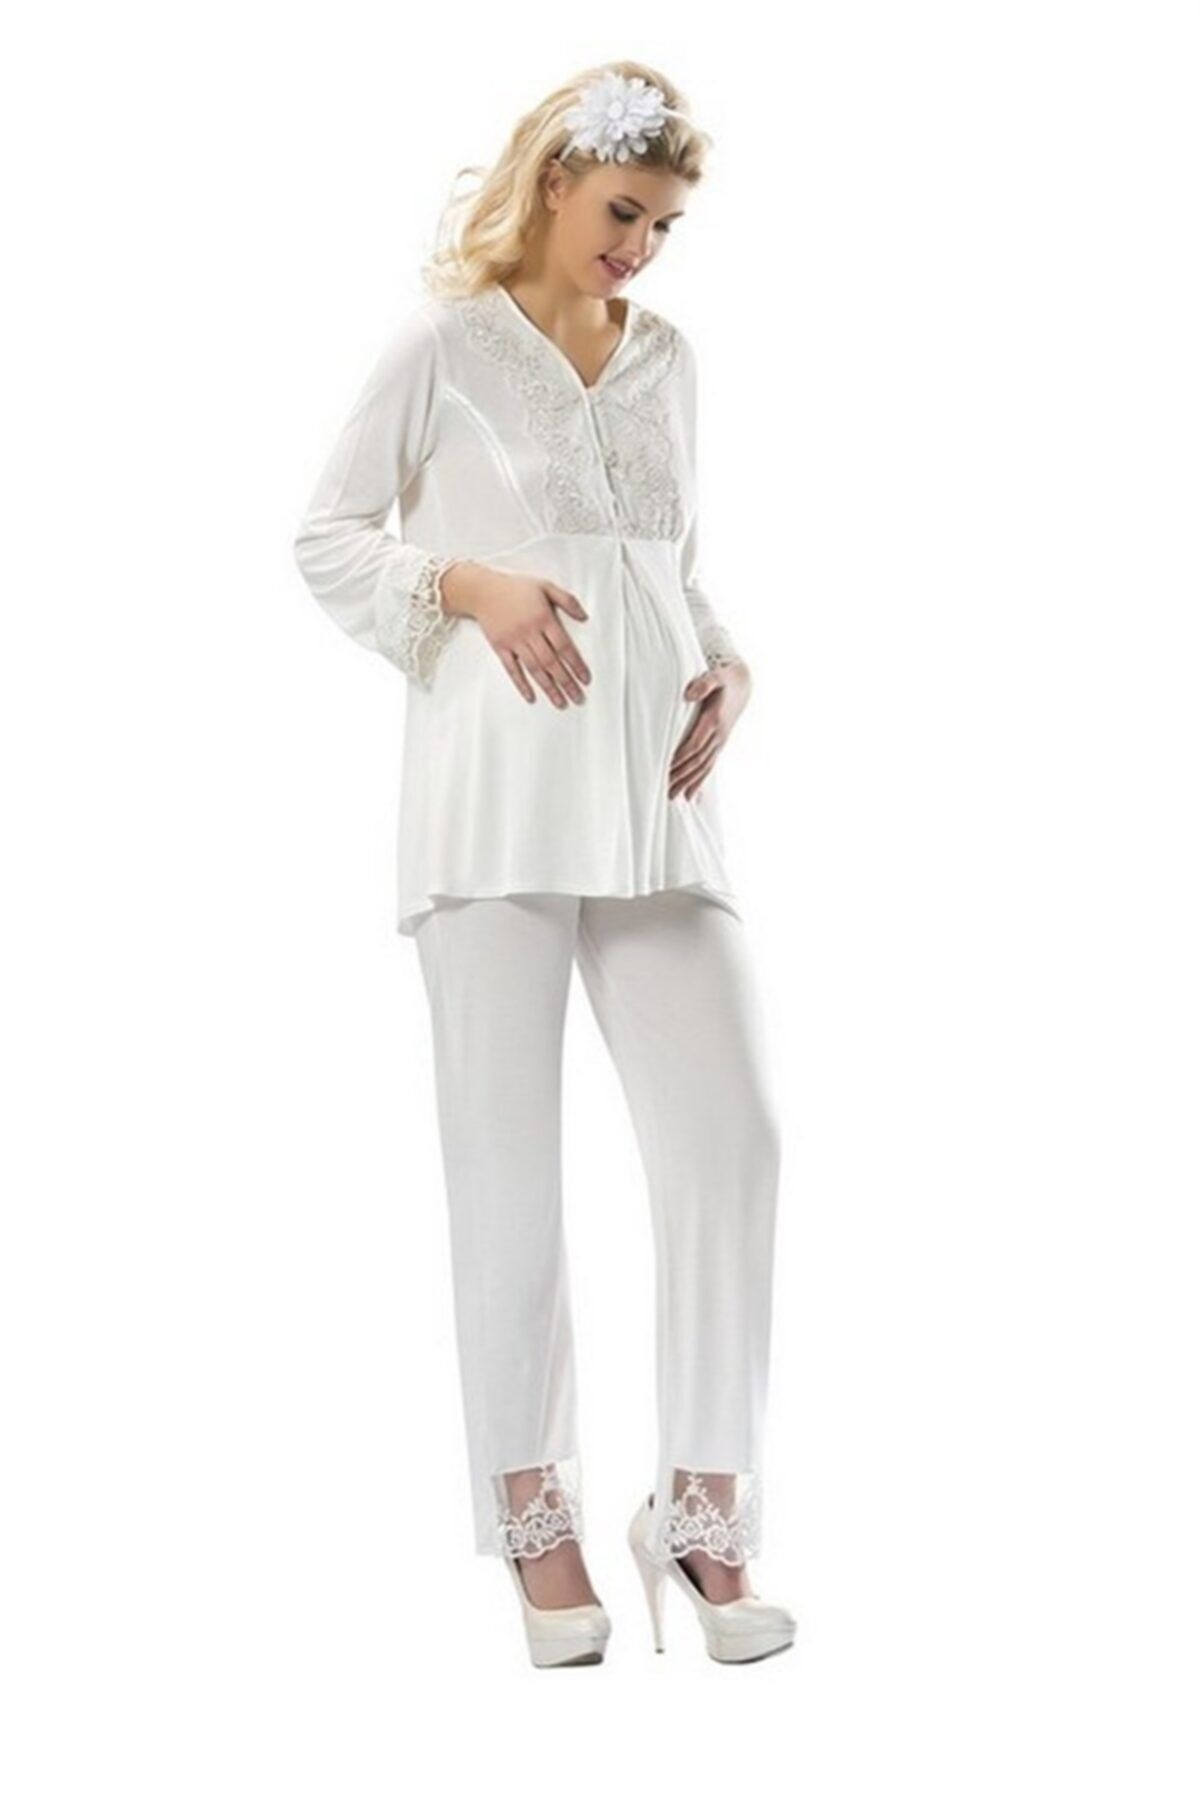 Sistina Kadın Beyaz Penye Hamile Pijama 1301